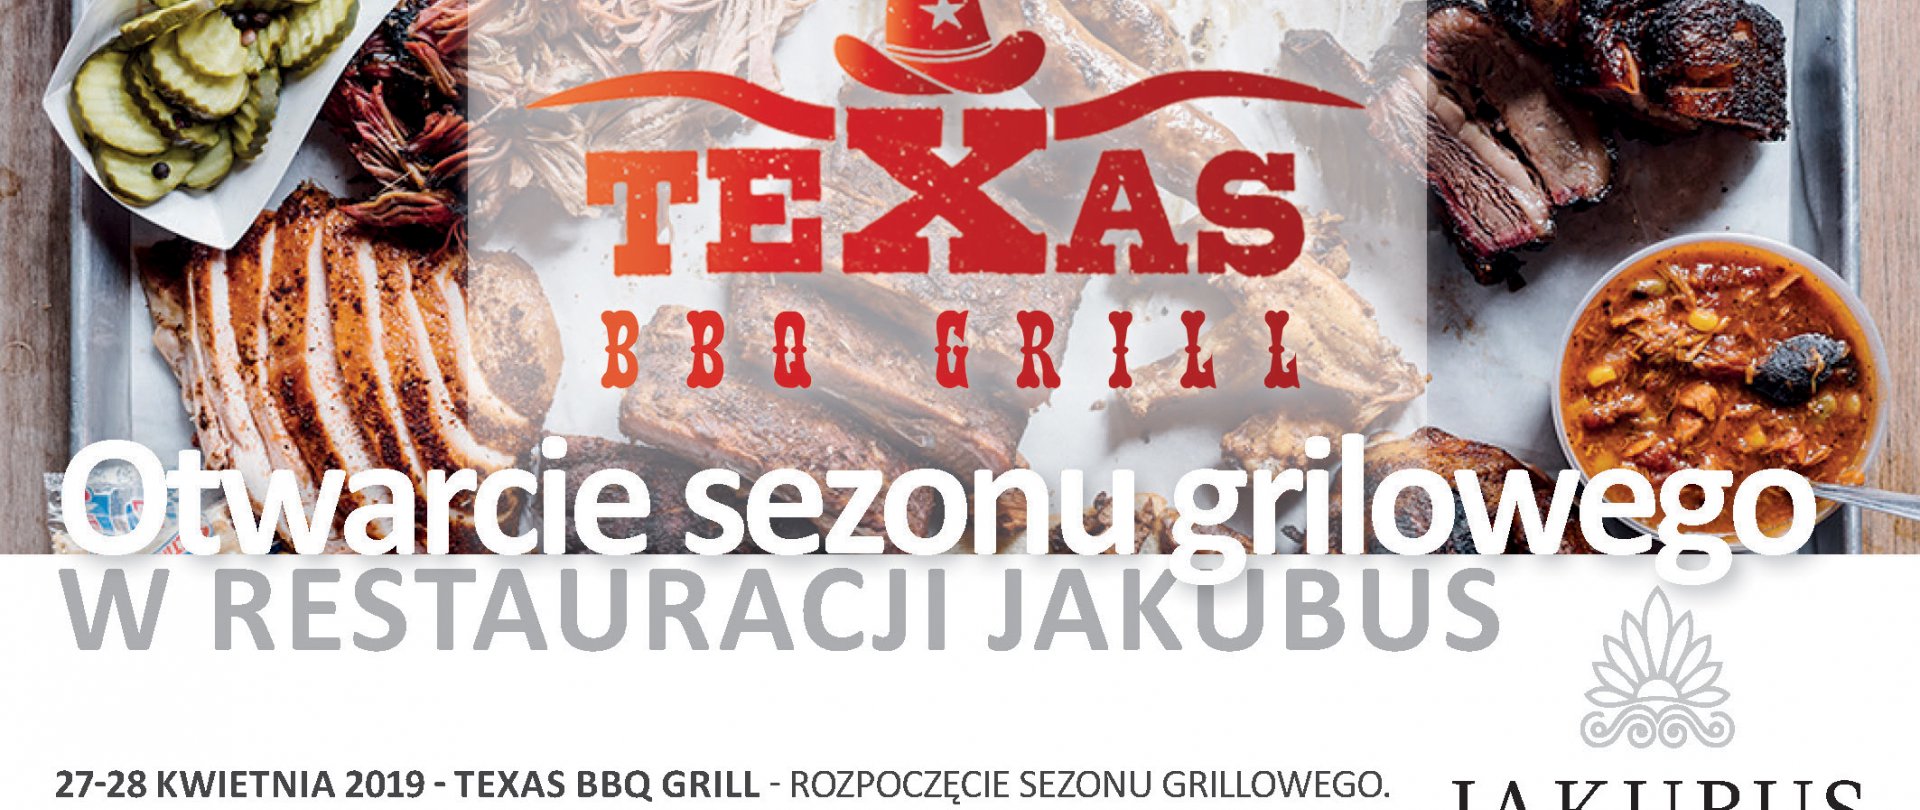 TEXAS BBQ Grill